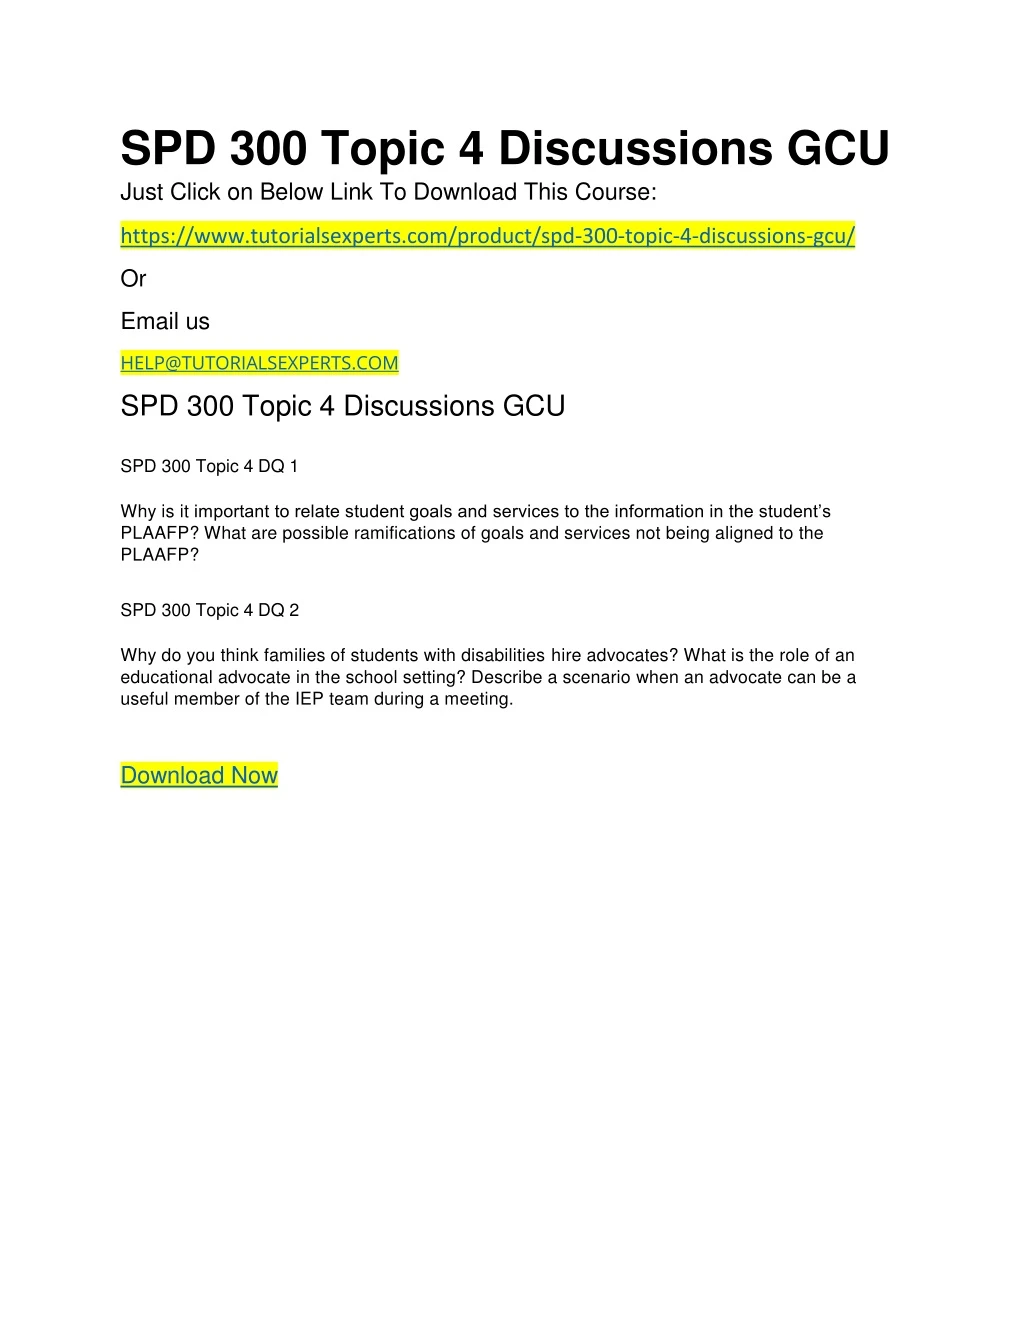 spd 300 topic 4 discussions gcu just click